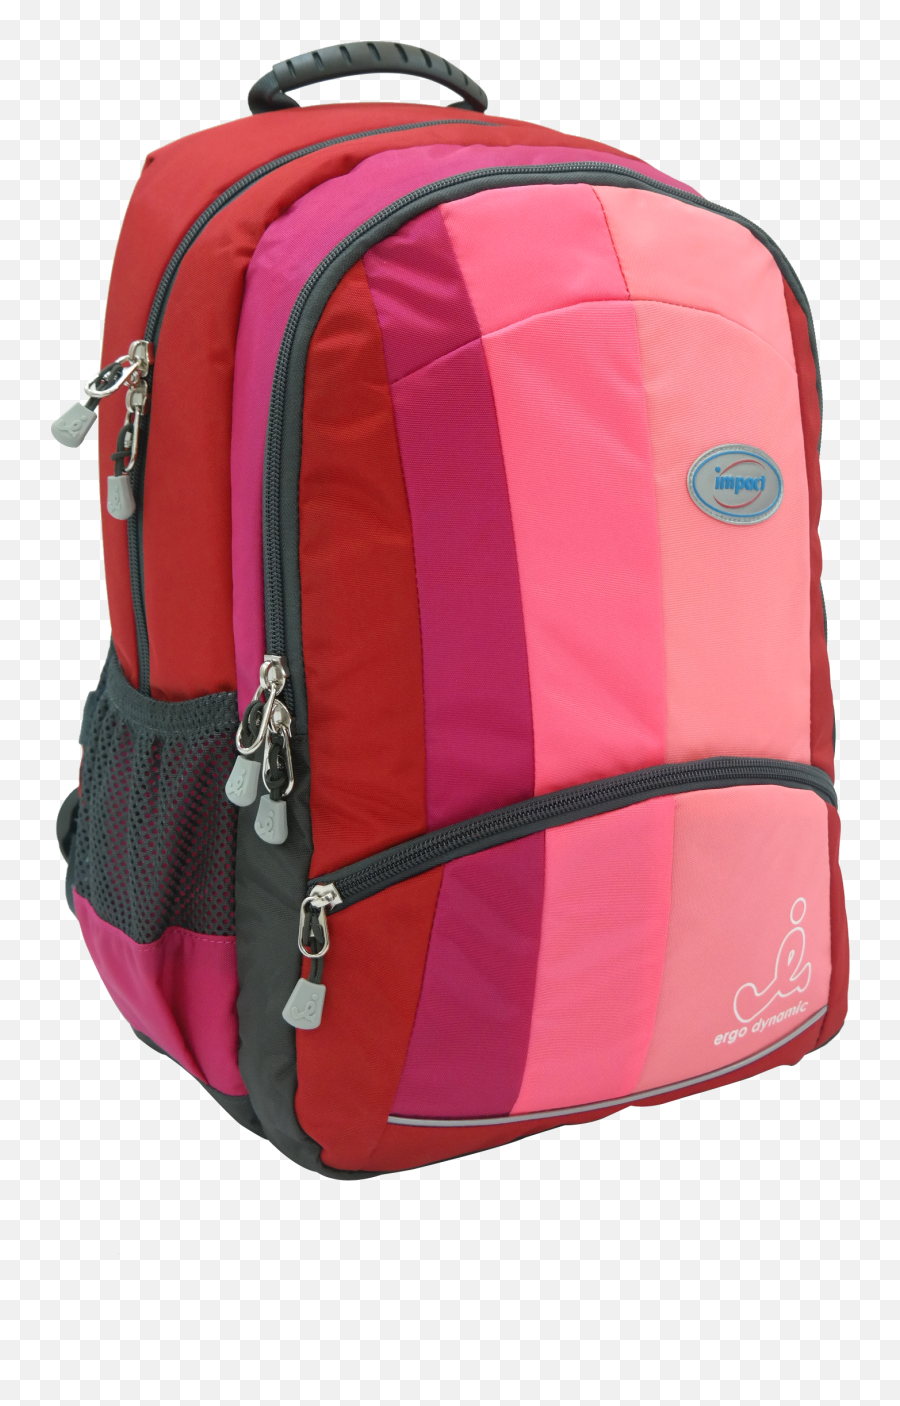 Impact Ergonomic Backpack Ipeg - Hiking Equipment Emoji,Red Backpack Emoji